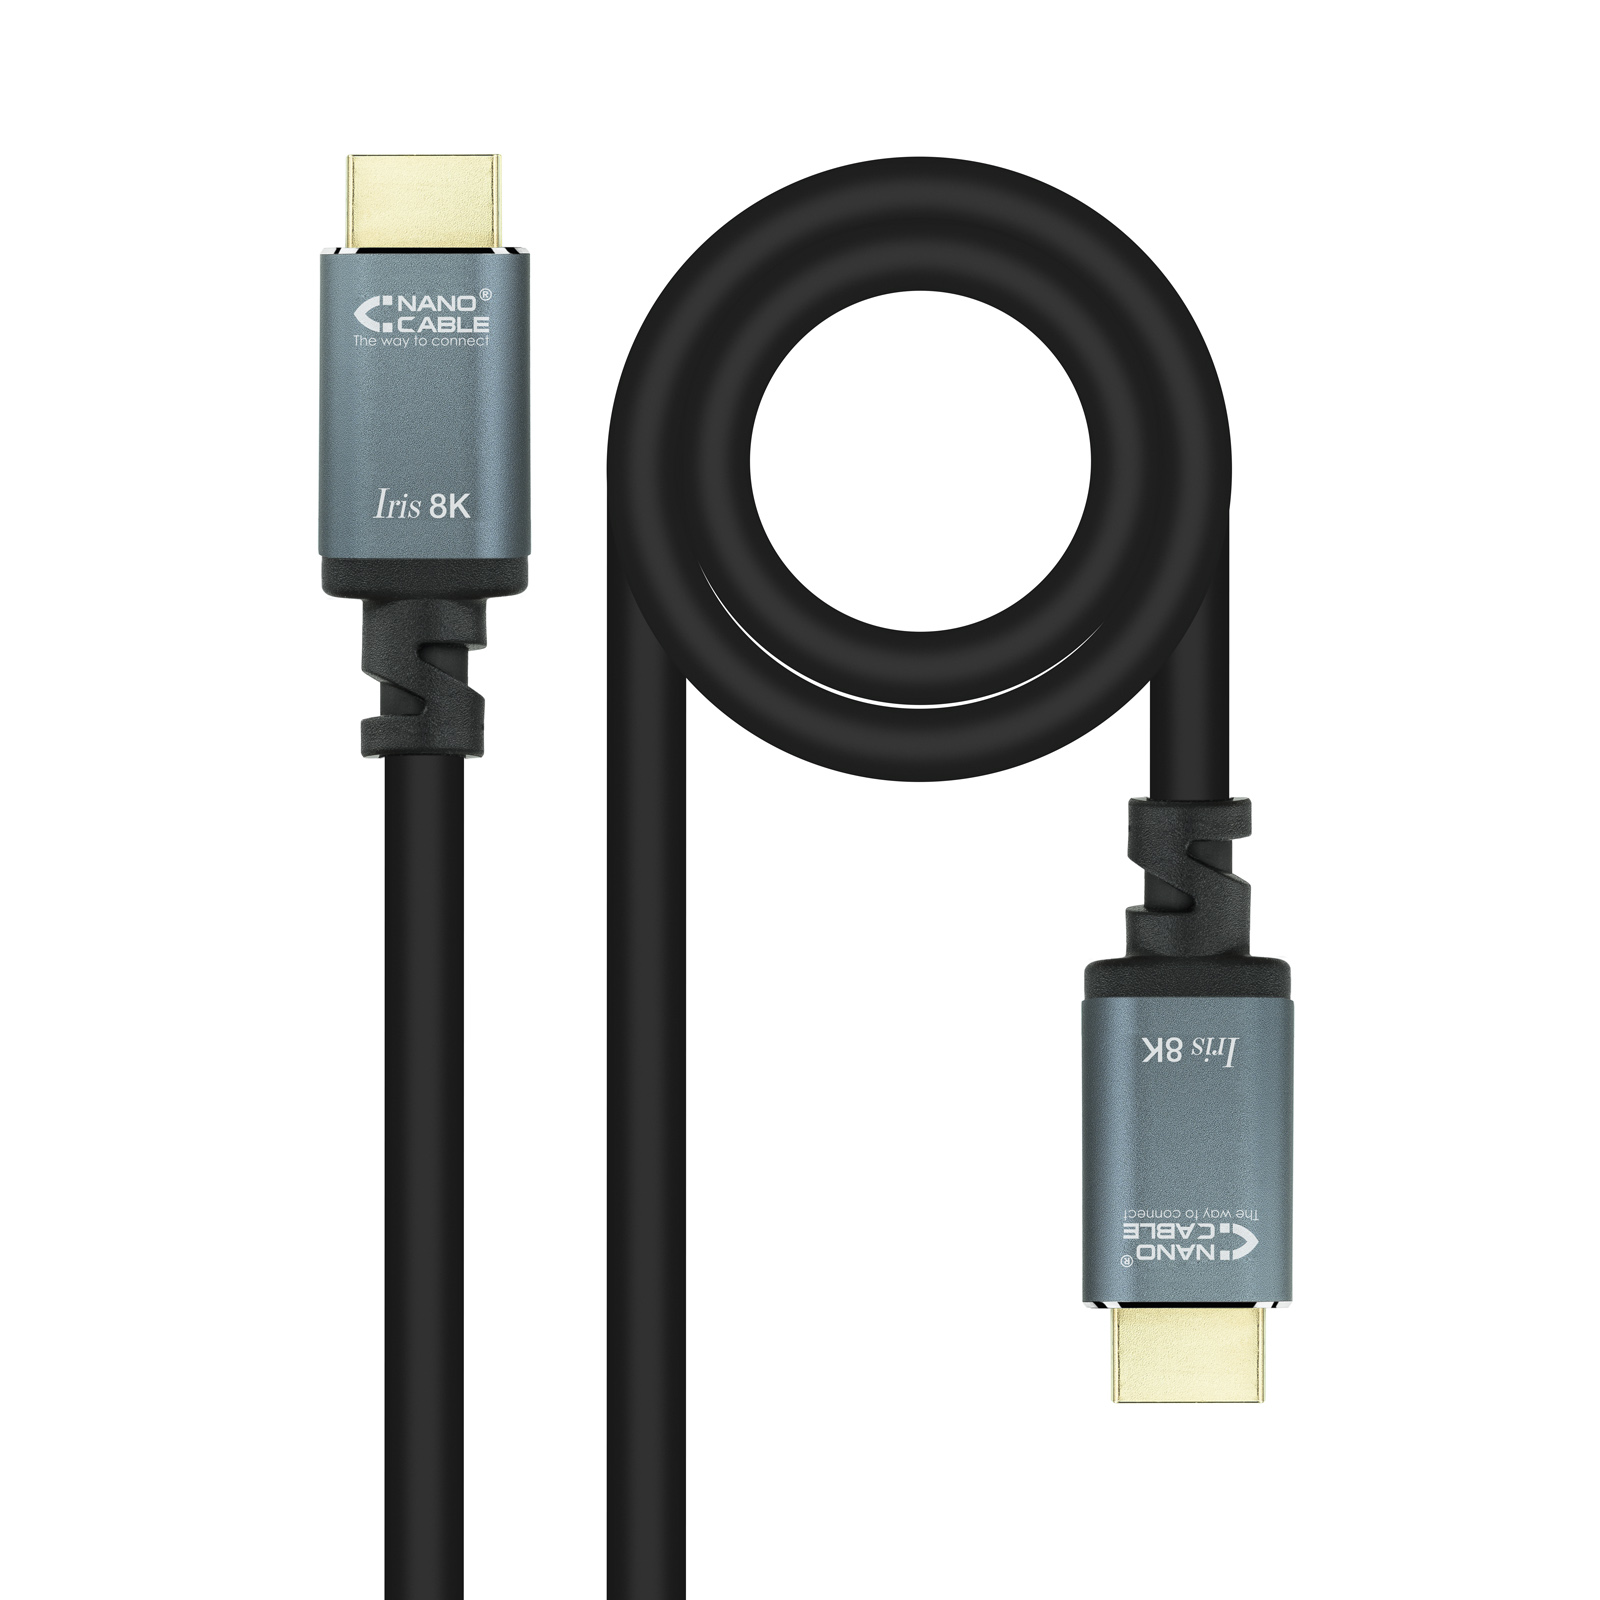 Câble Nanocable HDMI 2.1 Iris 8K A/MA/M - 10 m - Noir